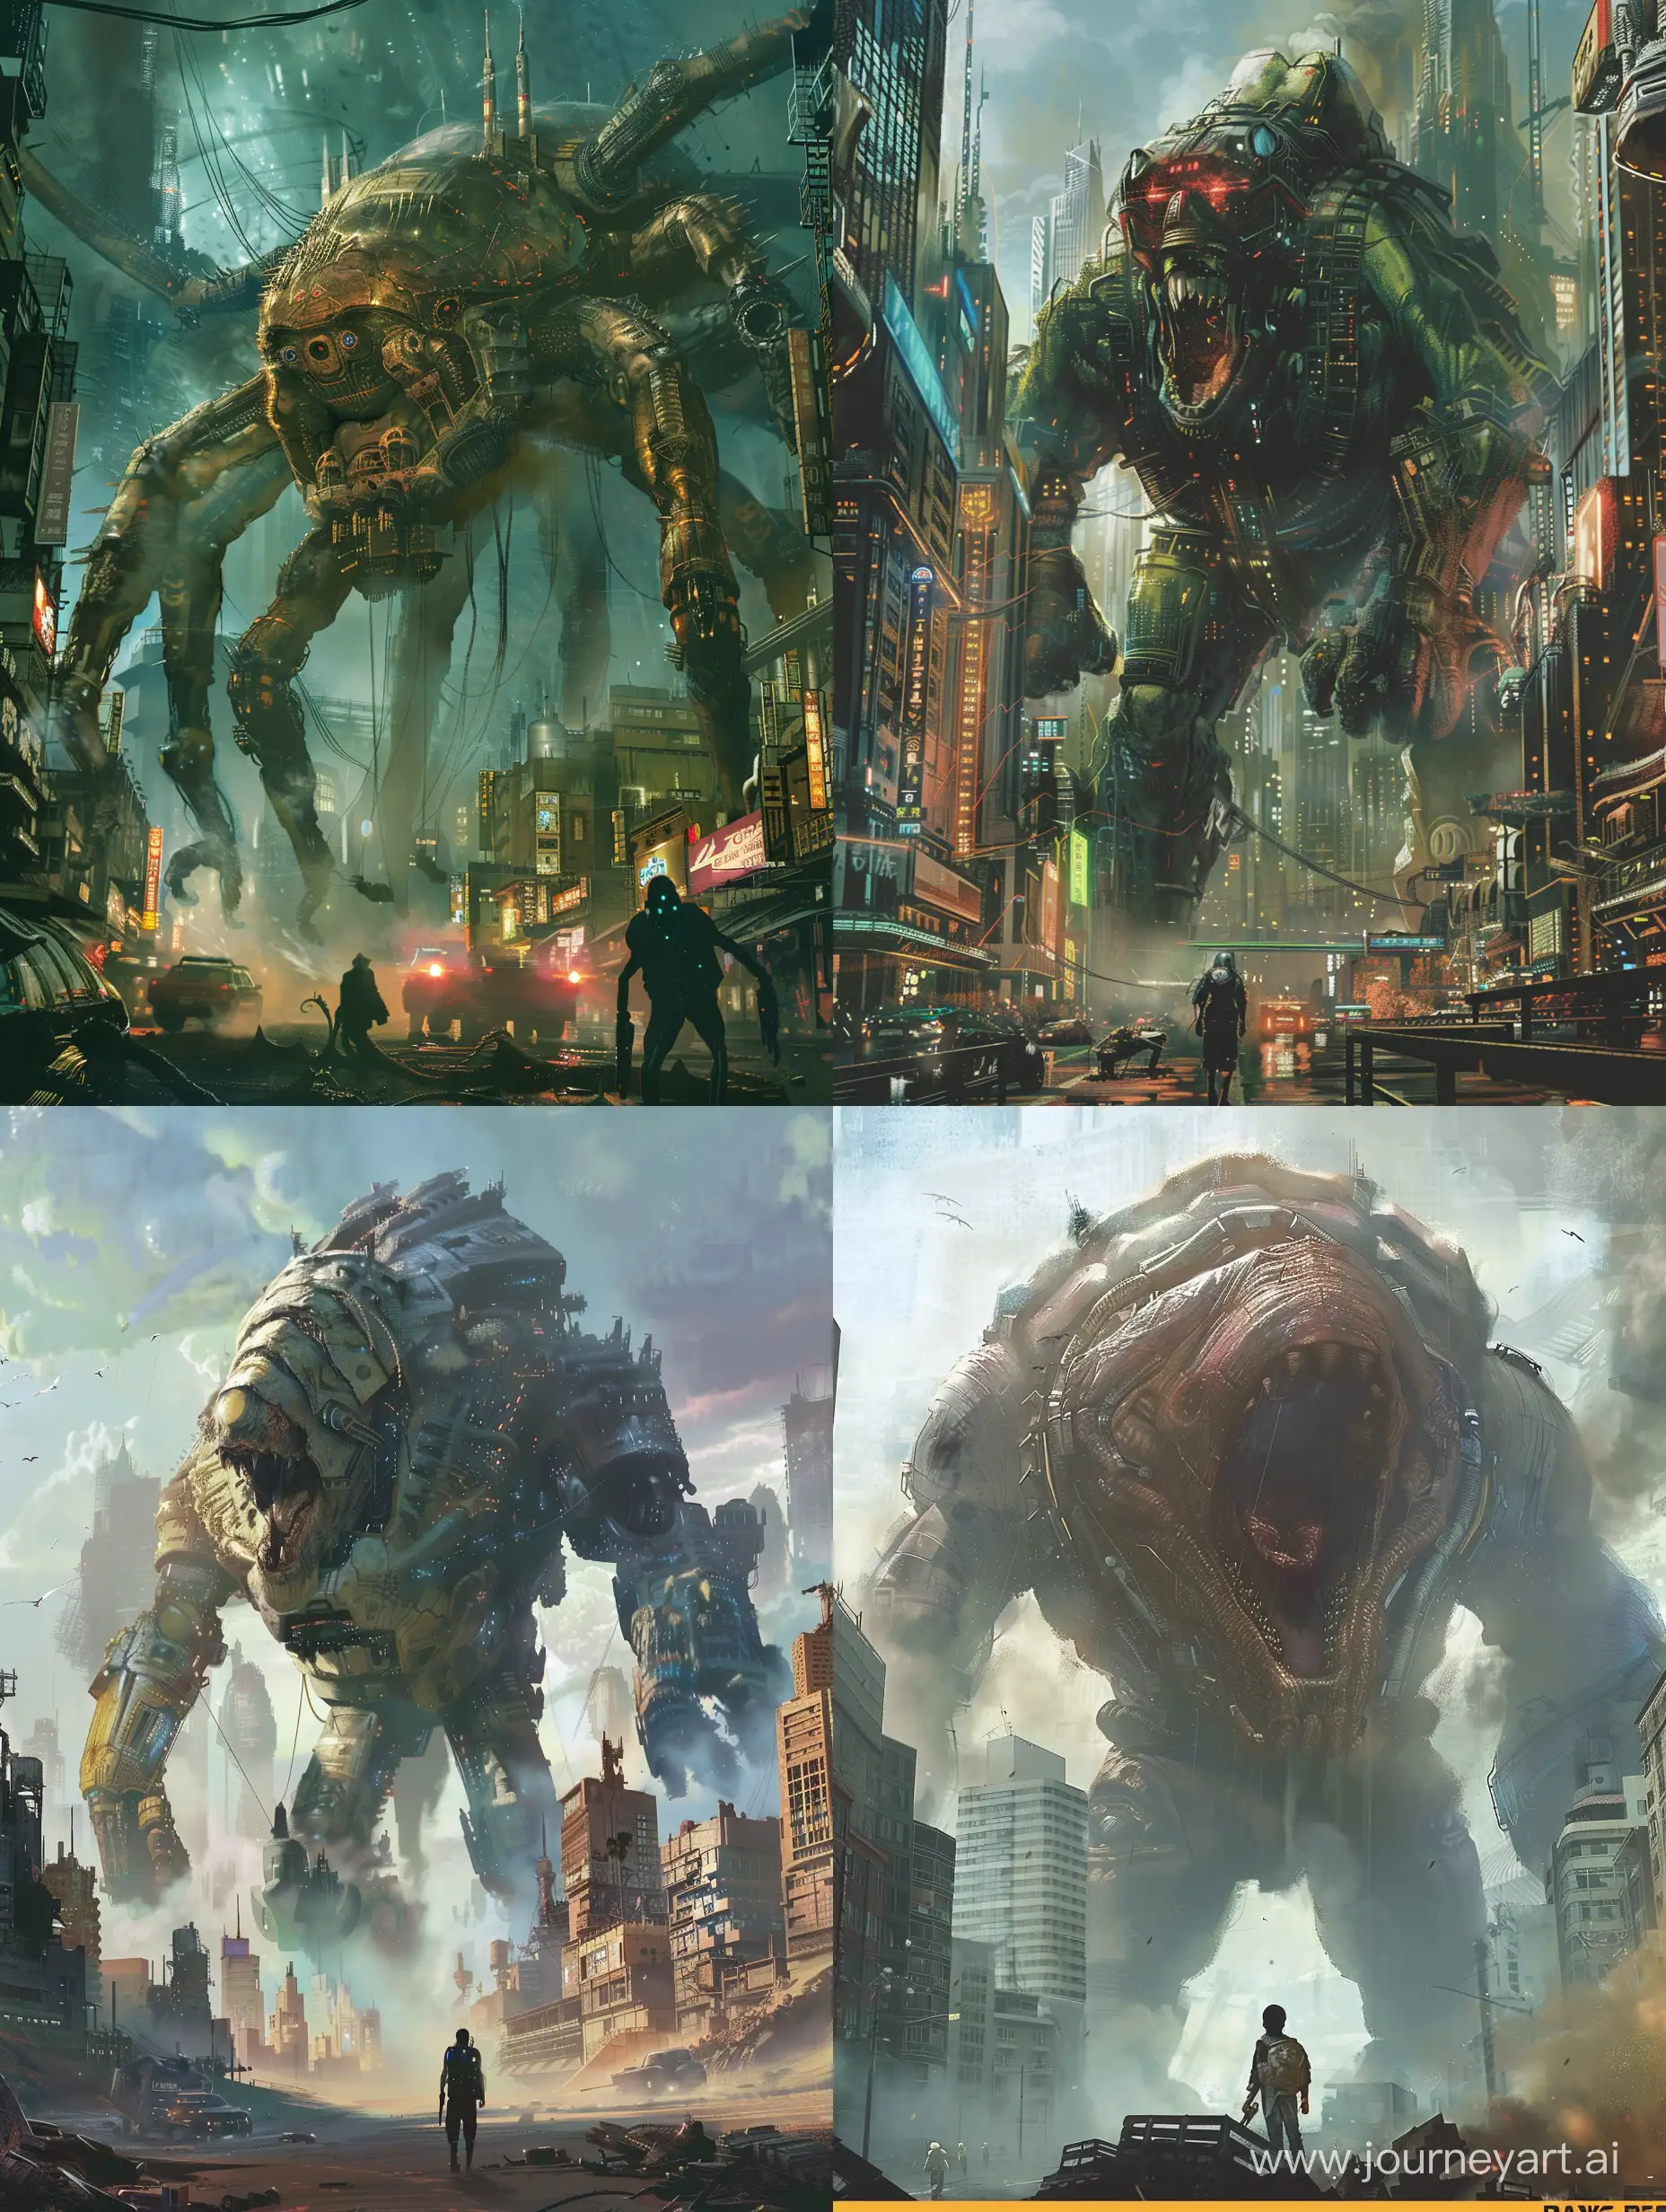 Futuristic-Cyberpunk-Cityscape-with-Massive-Creatures